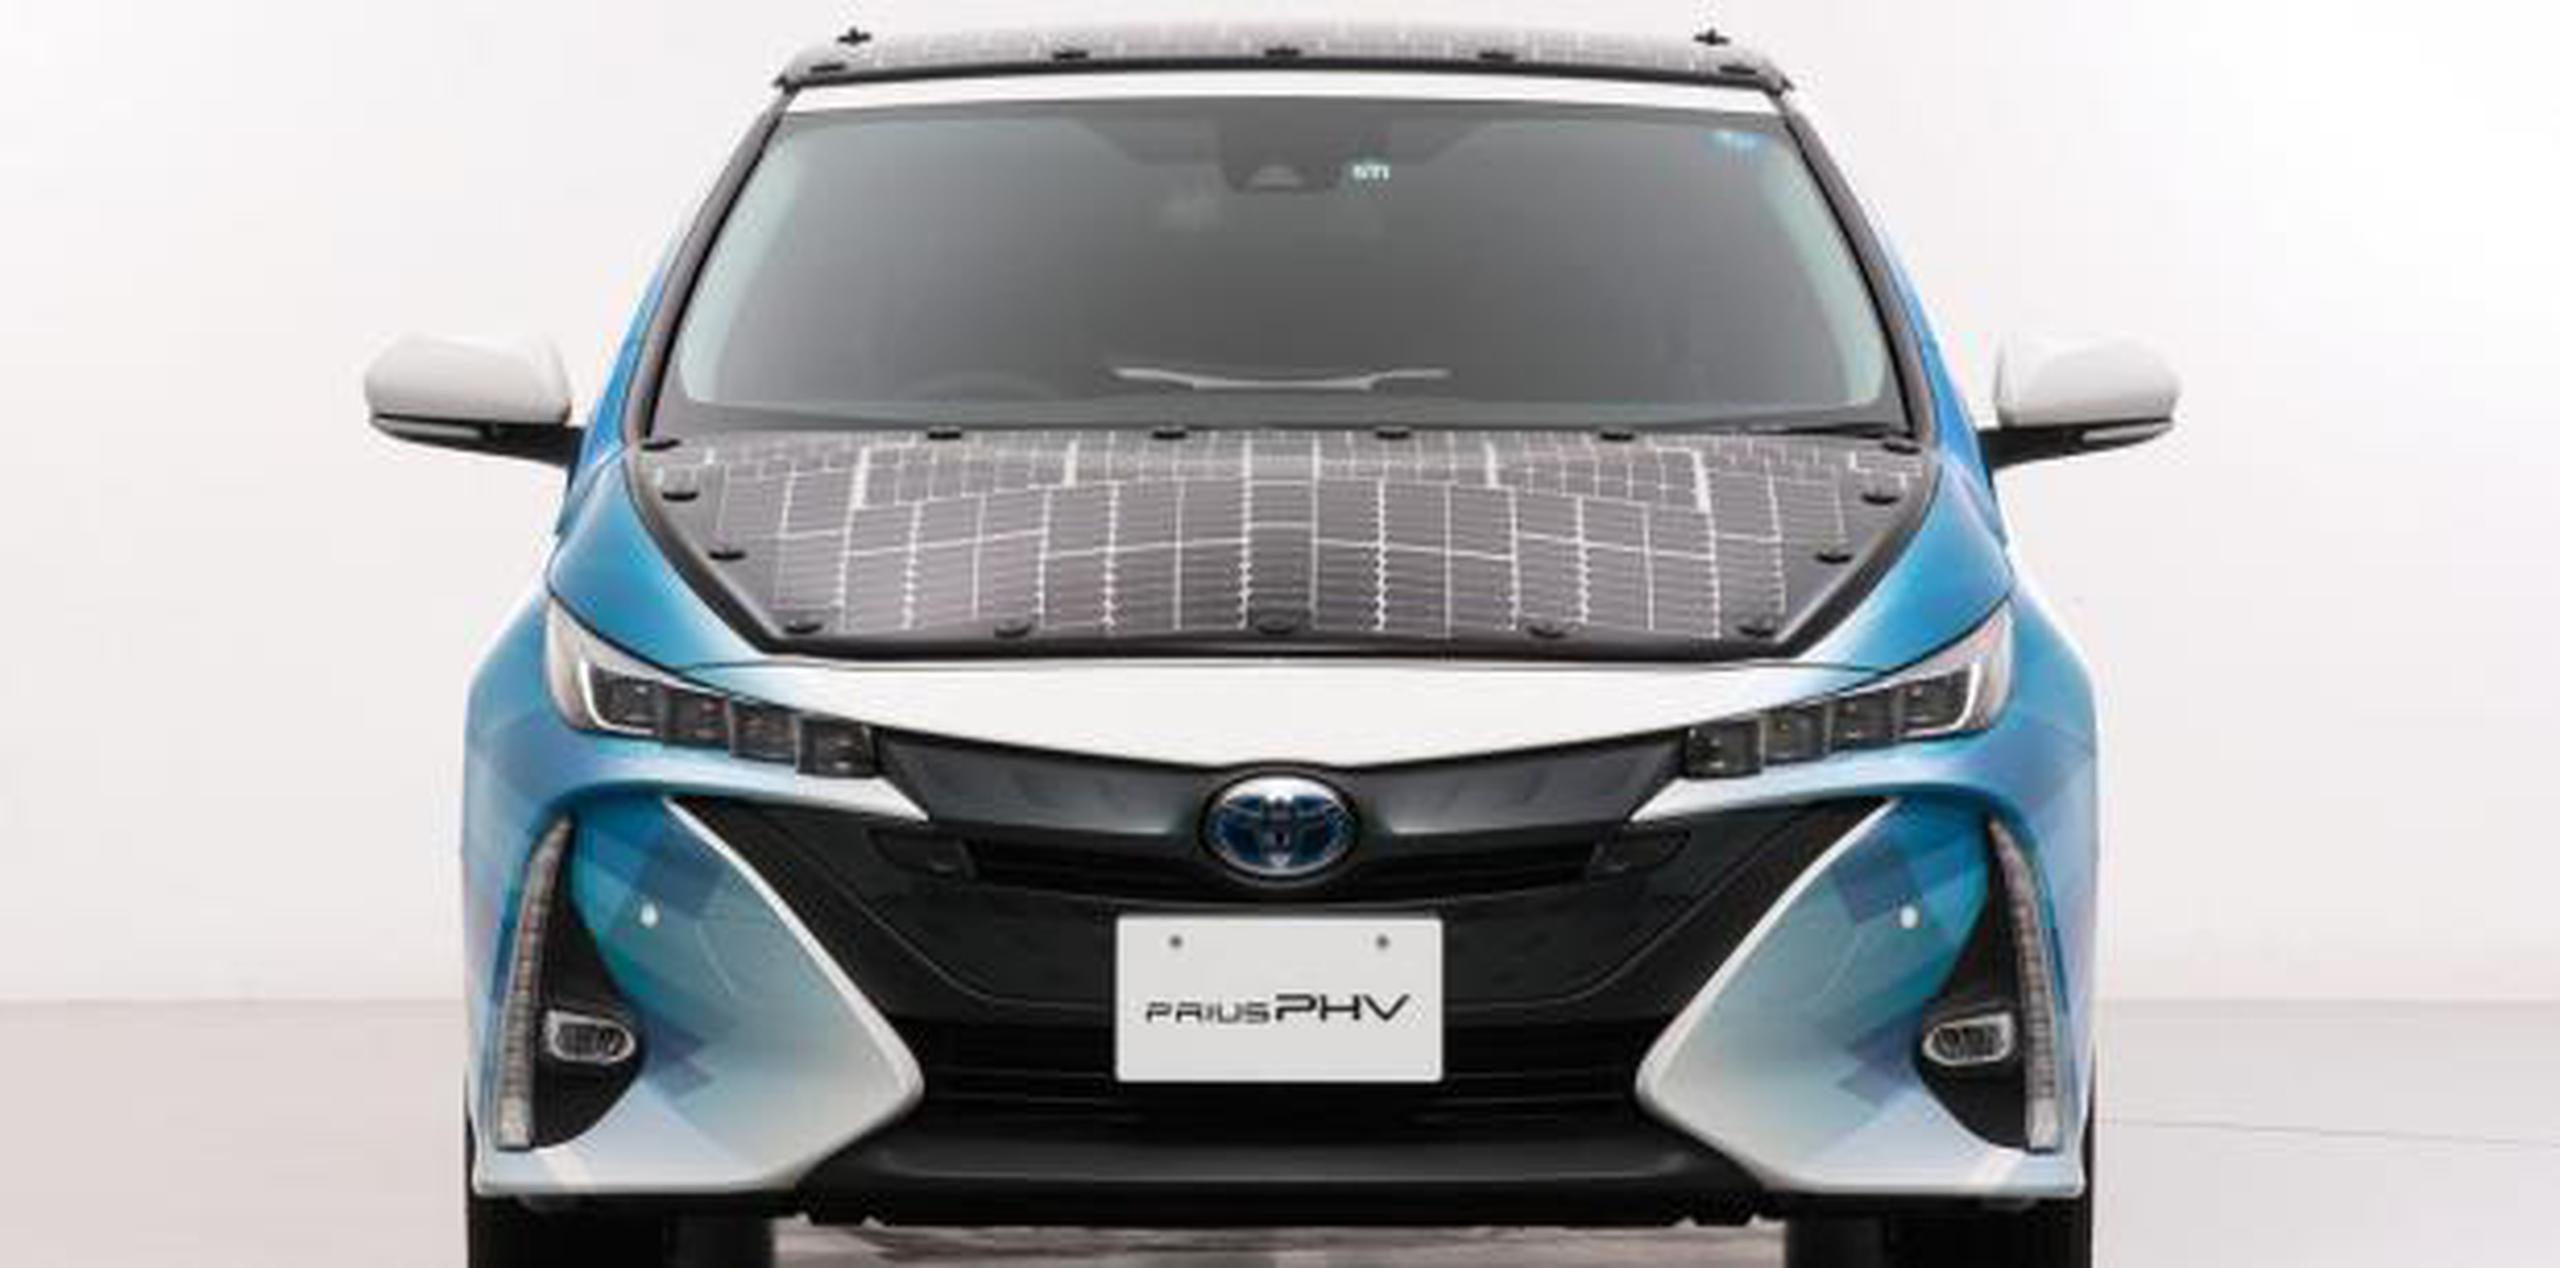 El nuevo Toyota Prius tiene una capacidad de generación de 860 W frente a los 180 W de su antecesor. (Toyota / GDA)